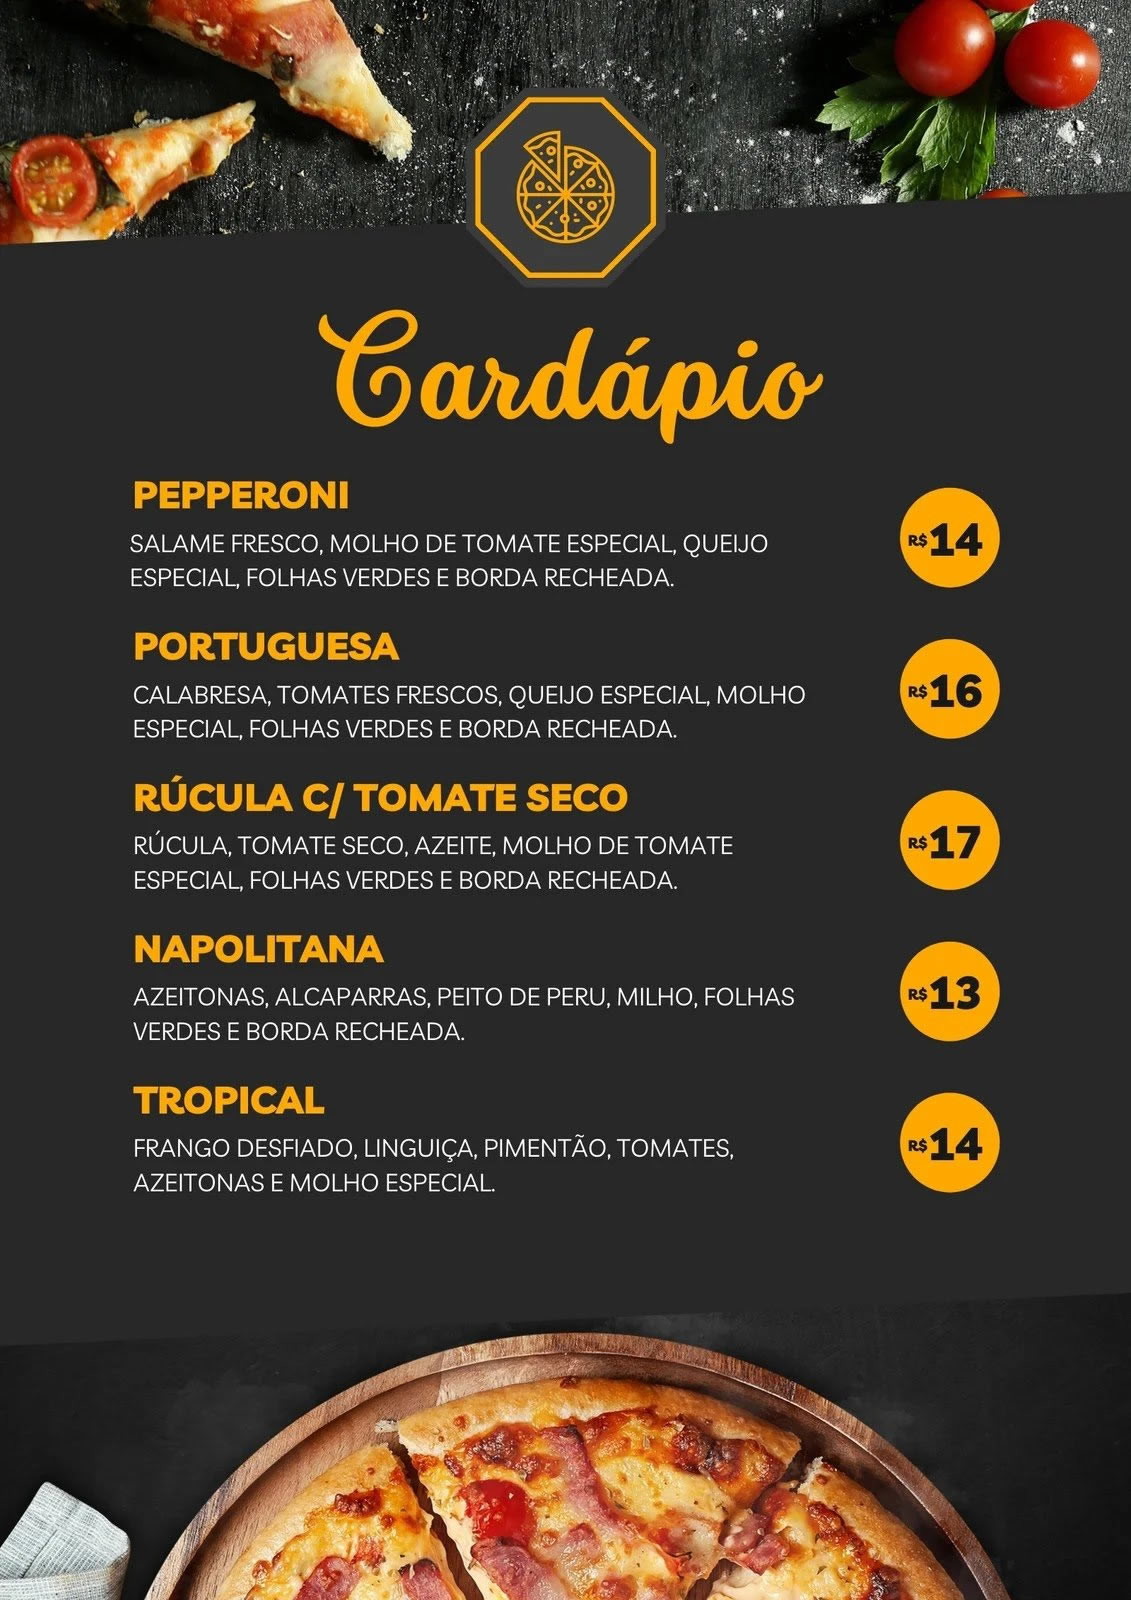 Cardápio Menu Digital / Pizza Pizzaria no Elo7 | Luiz Henrique (171C354) - cardapio pizzaria